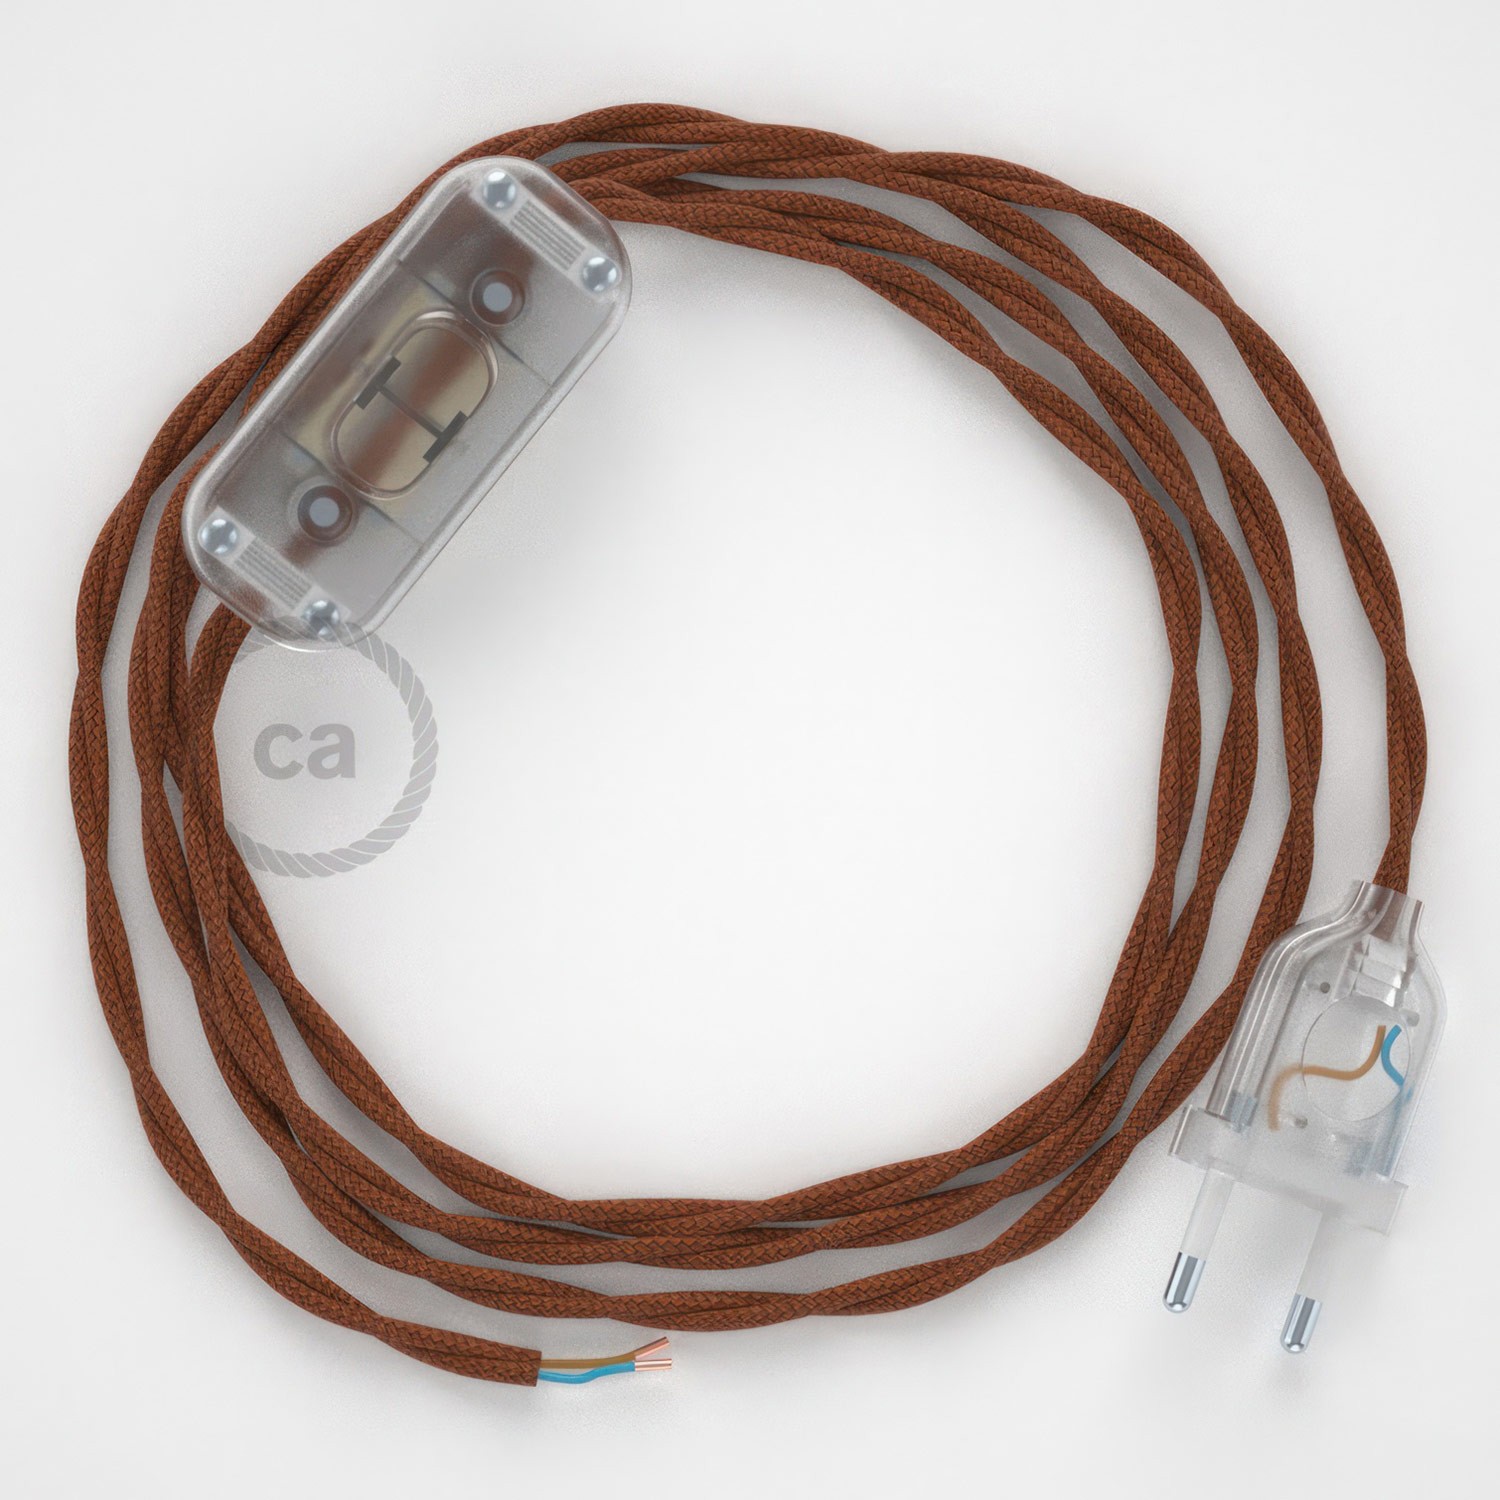 Cableado para lámpara, cable TC23 Algodón Ciervo 1,8m. Elige tu el color de la clavija y del interruptor!